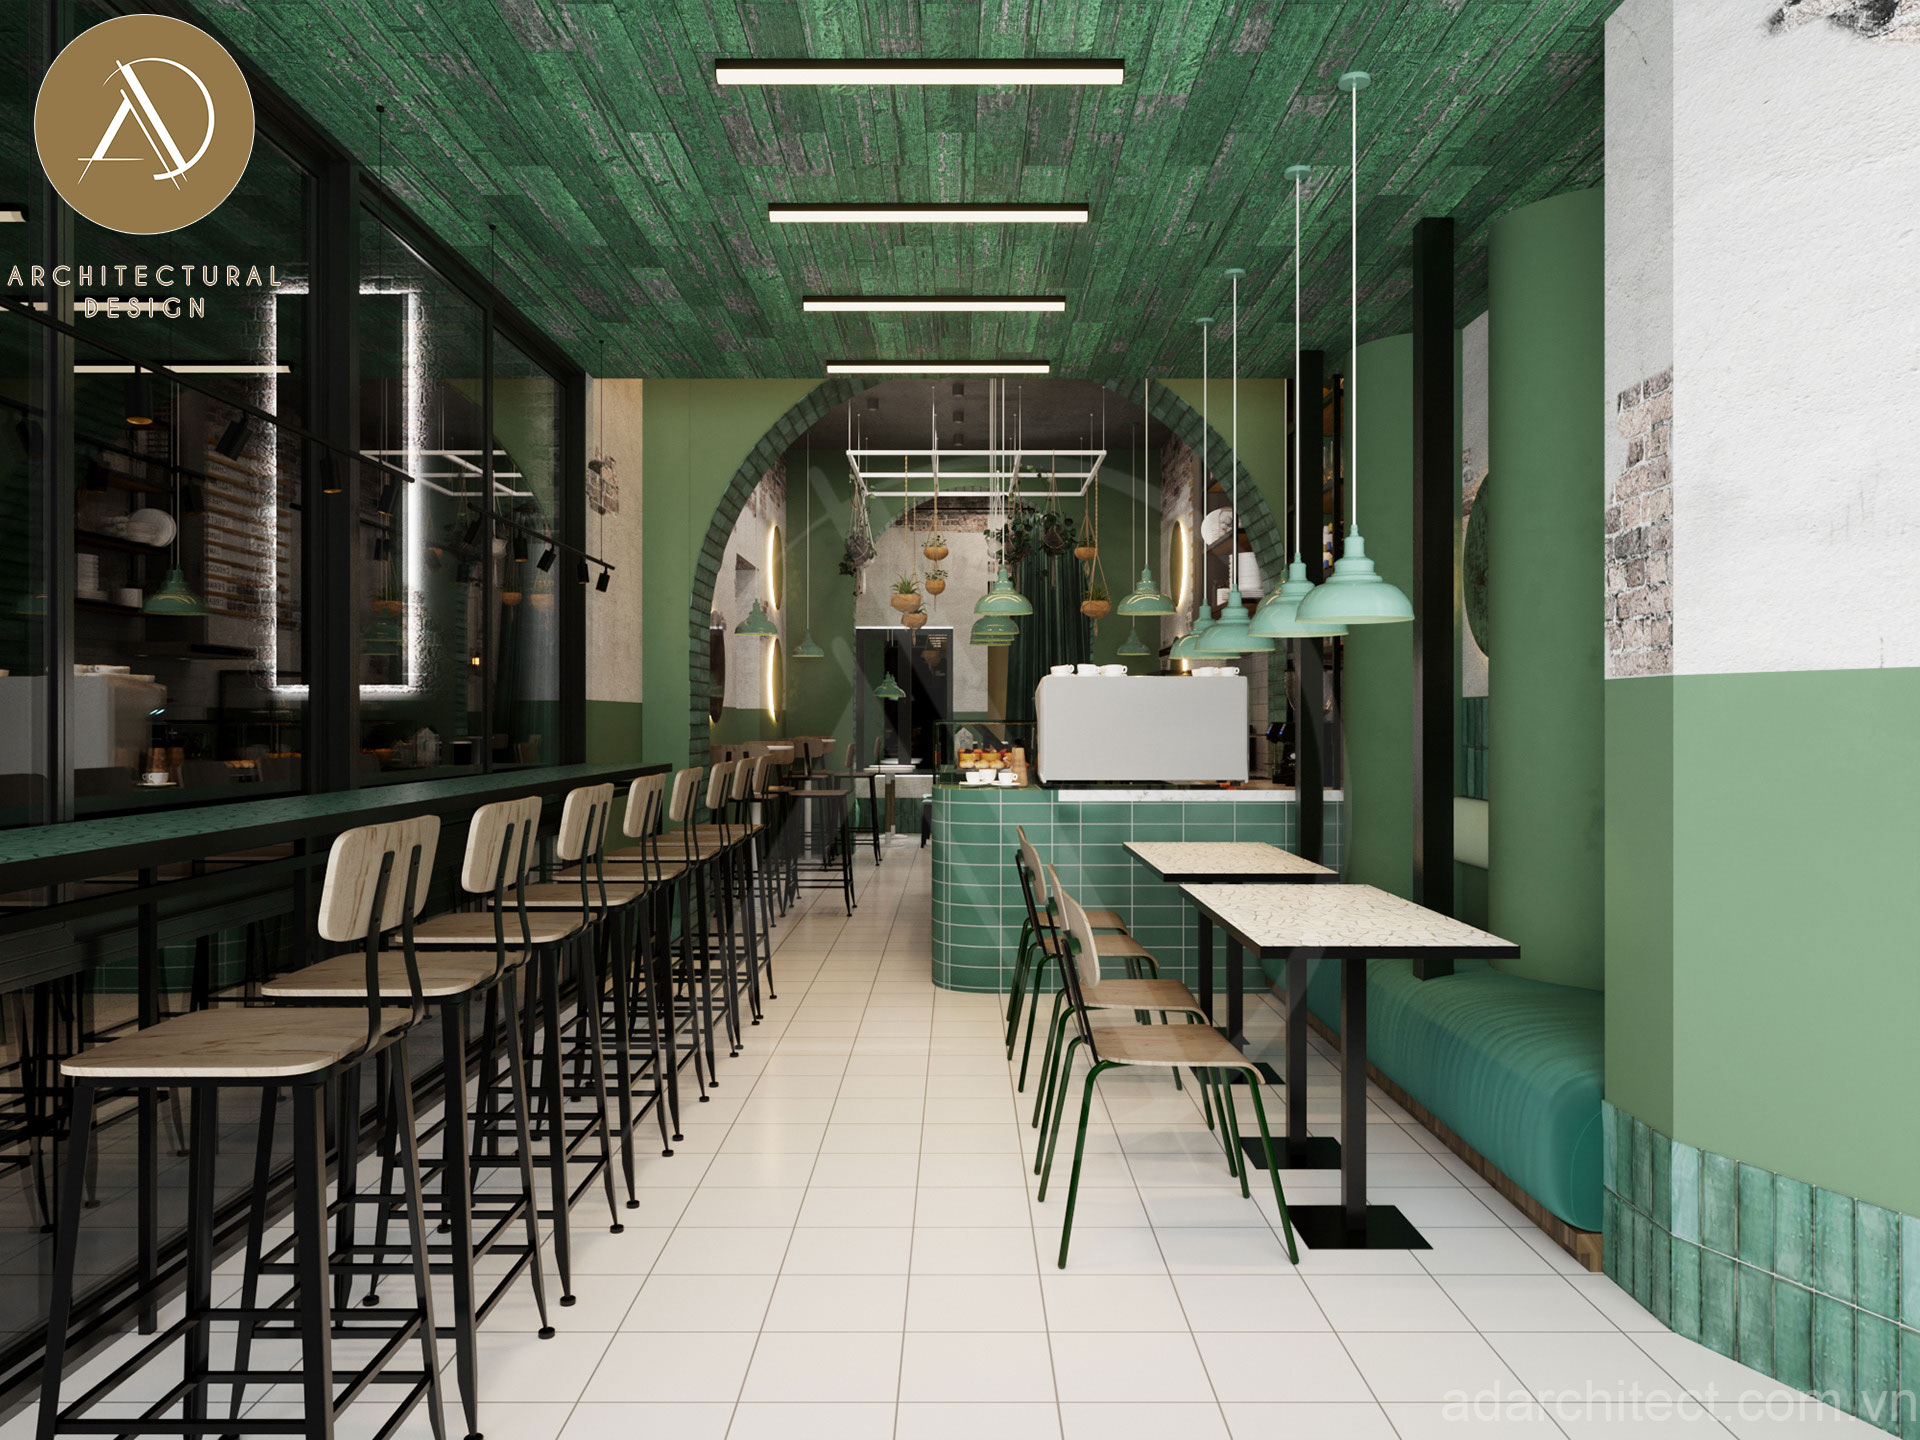 tiệm bánh đẹp: Thiết kế không gian quán nhỏ xinh hiện đại